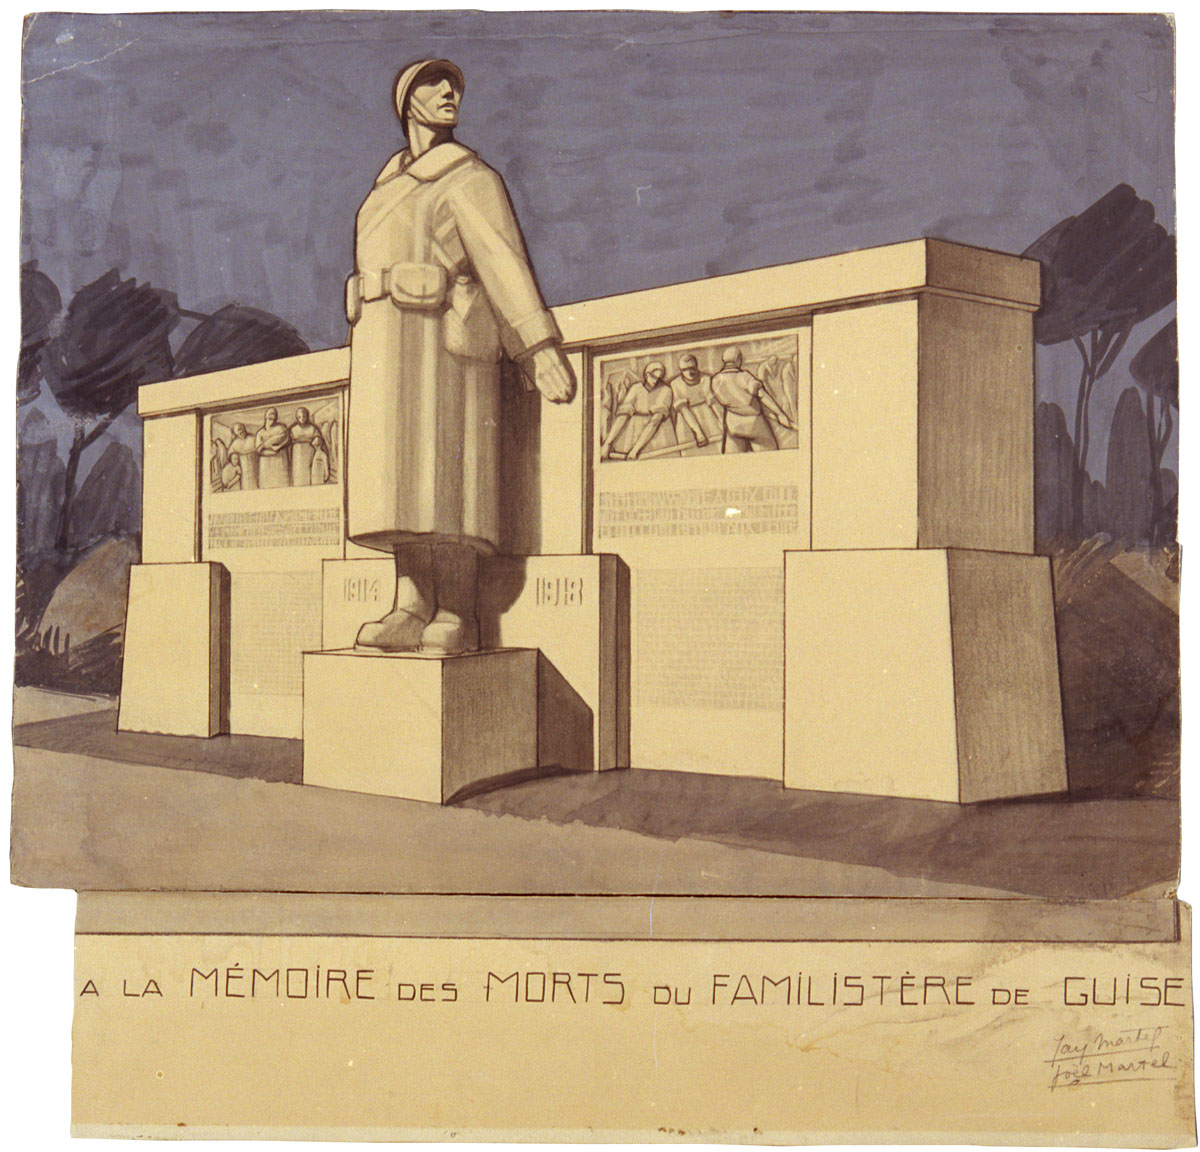 Le dessin représente le projet du monument aux morts du Familistère